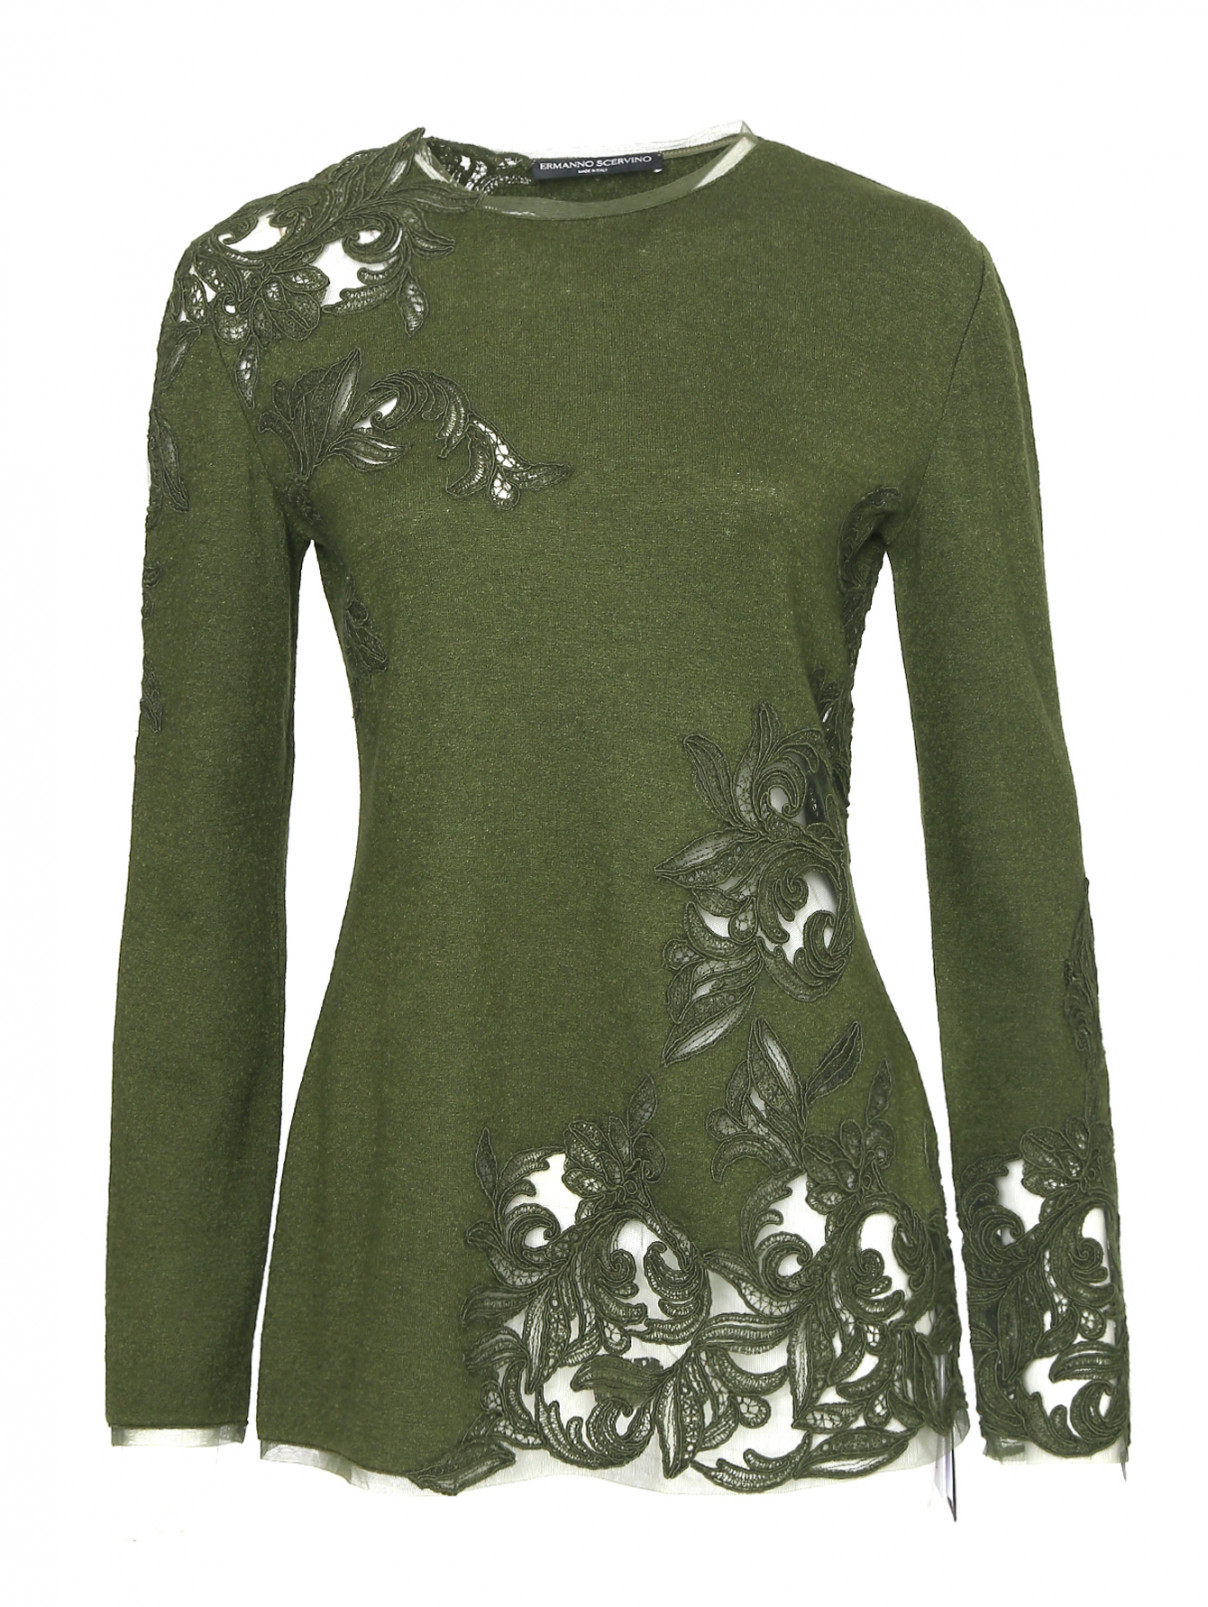 Джемпер из шерсти, шелка и кашемира с вышивкой Ermanno Scervino  –  Общий вид  – Цвет:  Зеленый